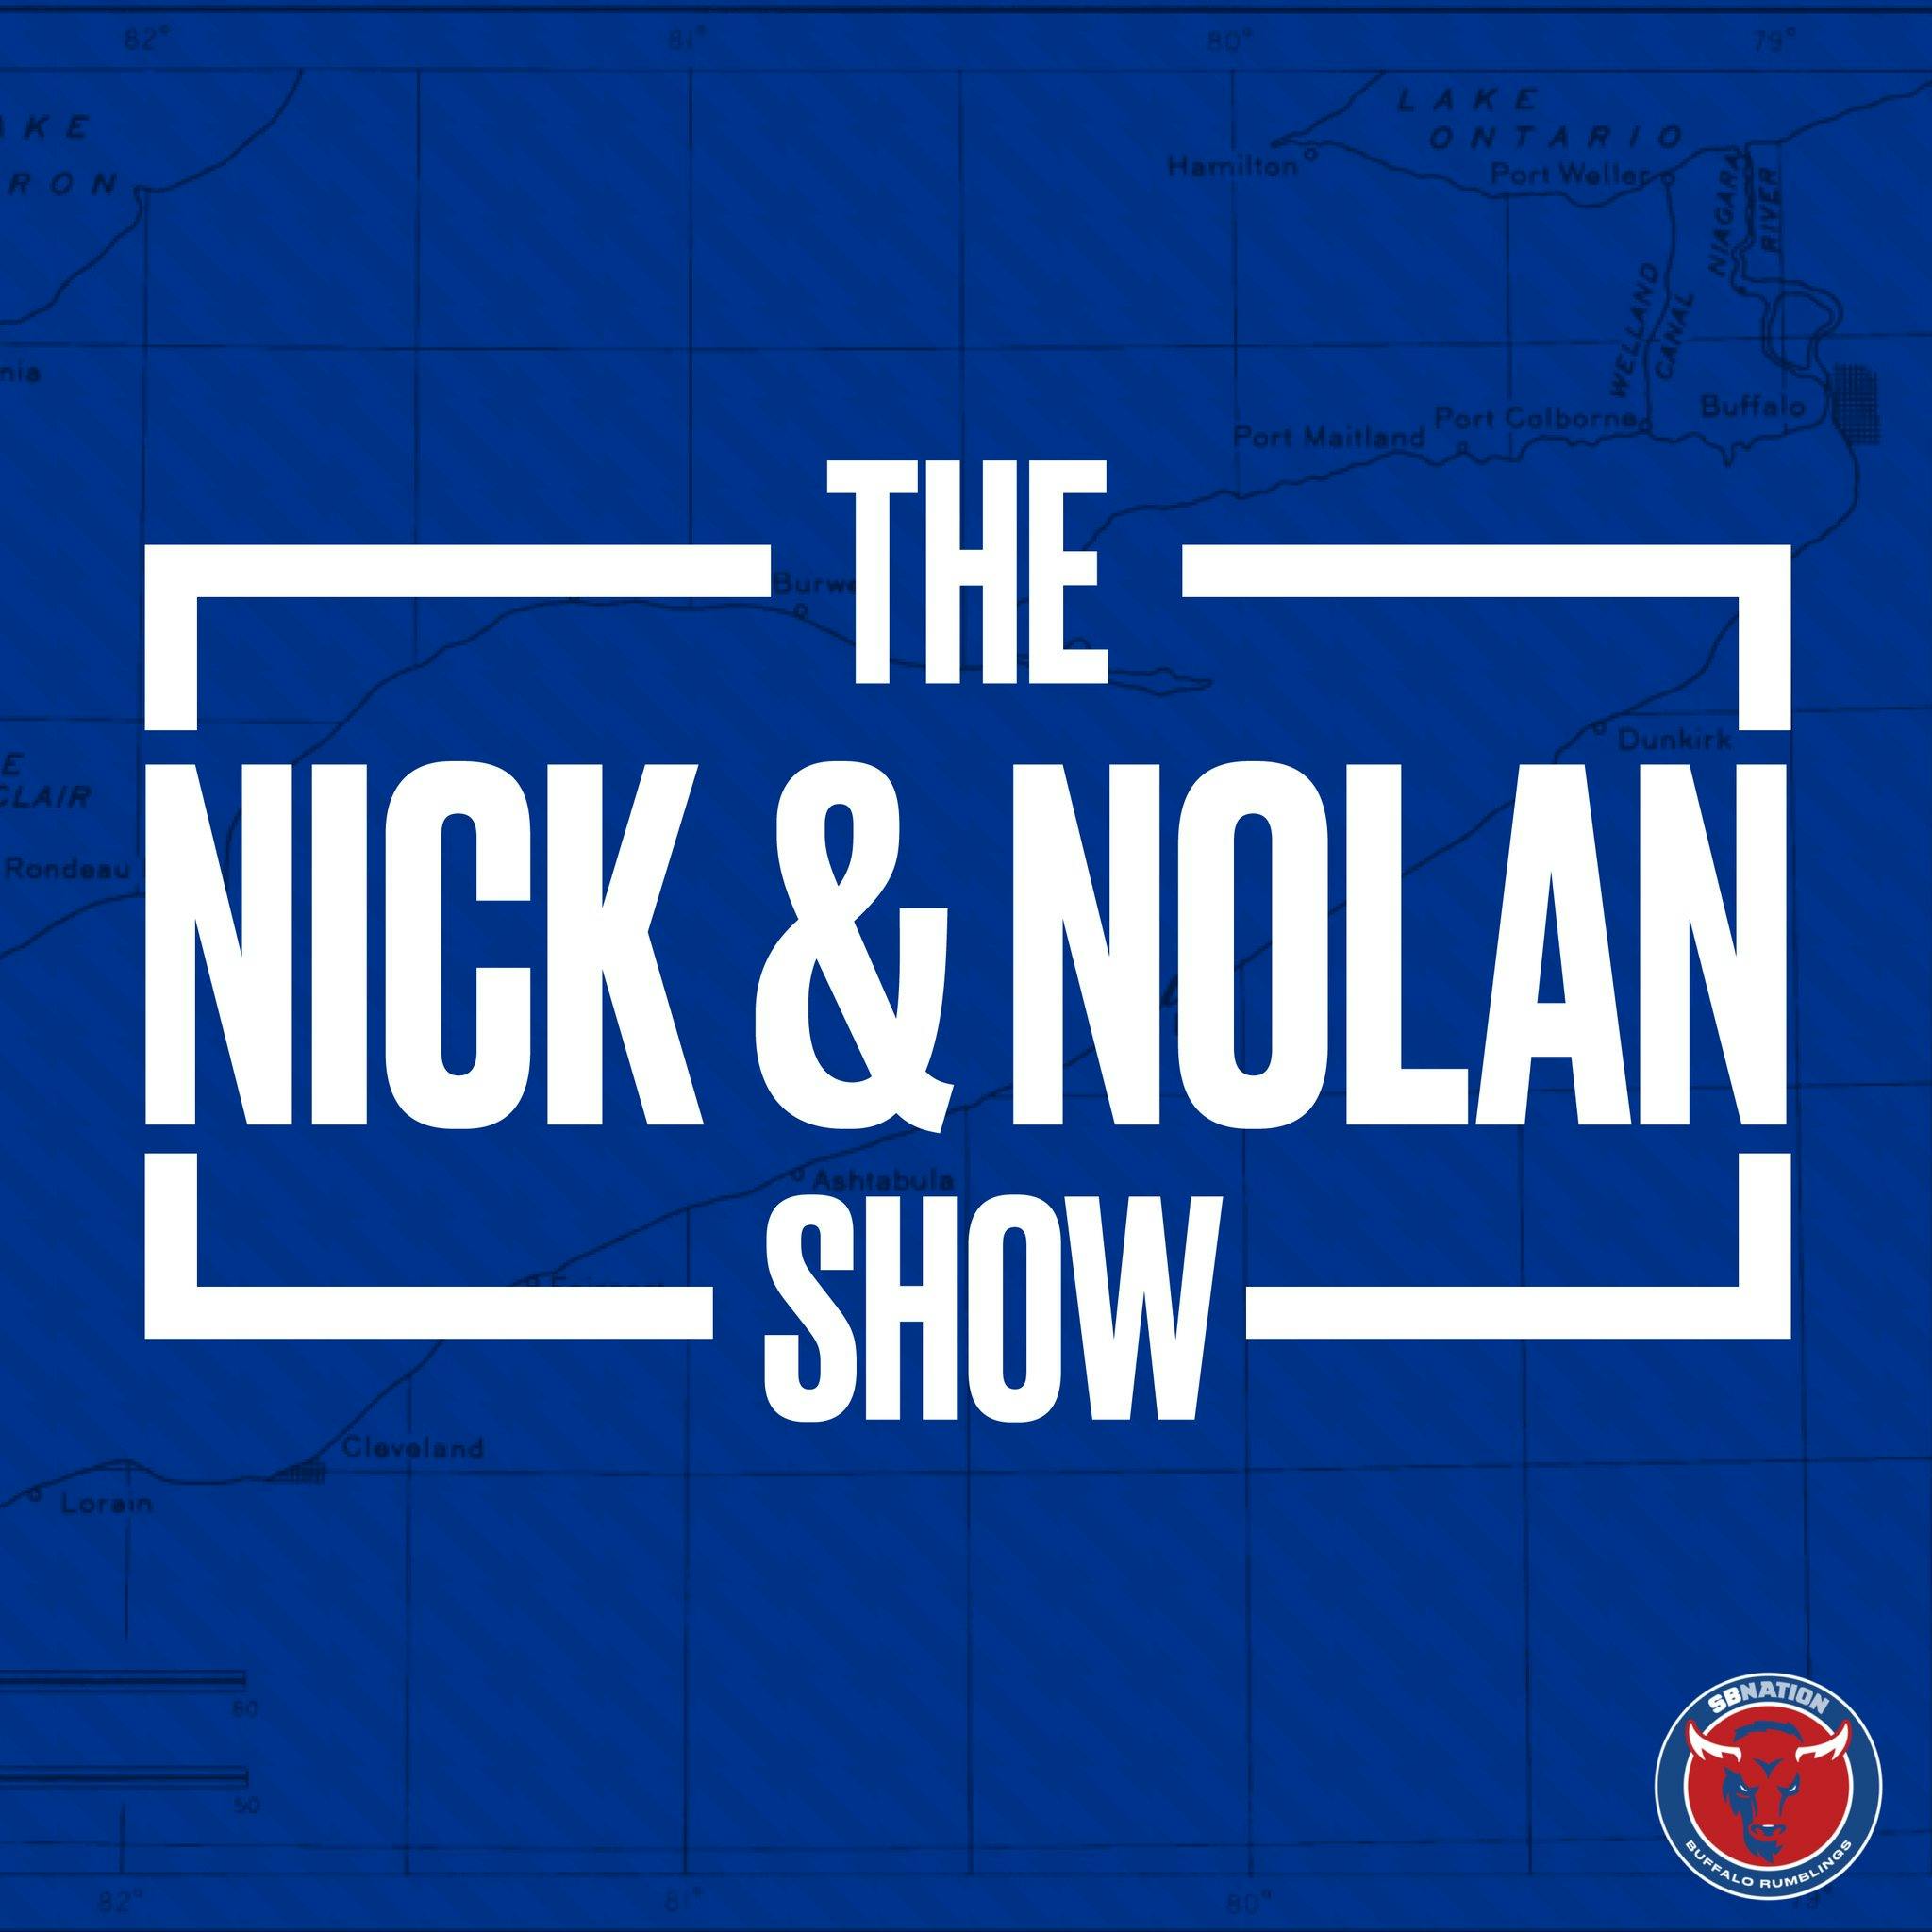 Nick & Nolan: Special Teams & Practice Squad Philosophy